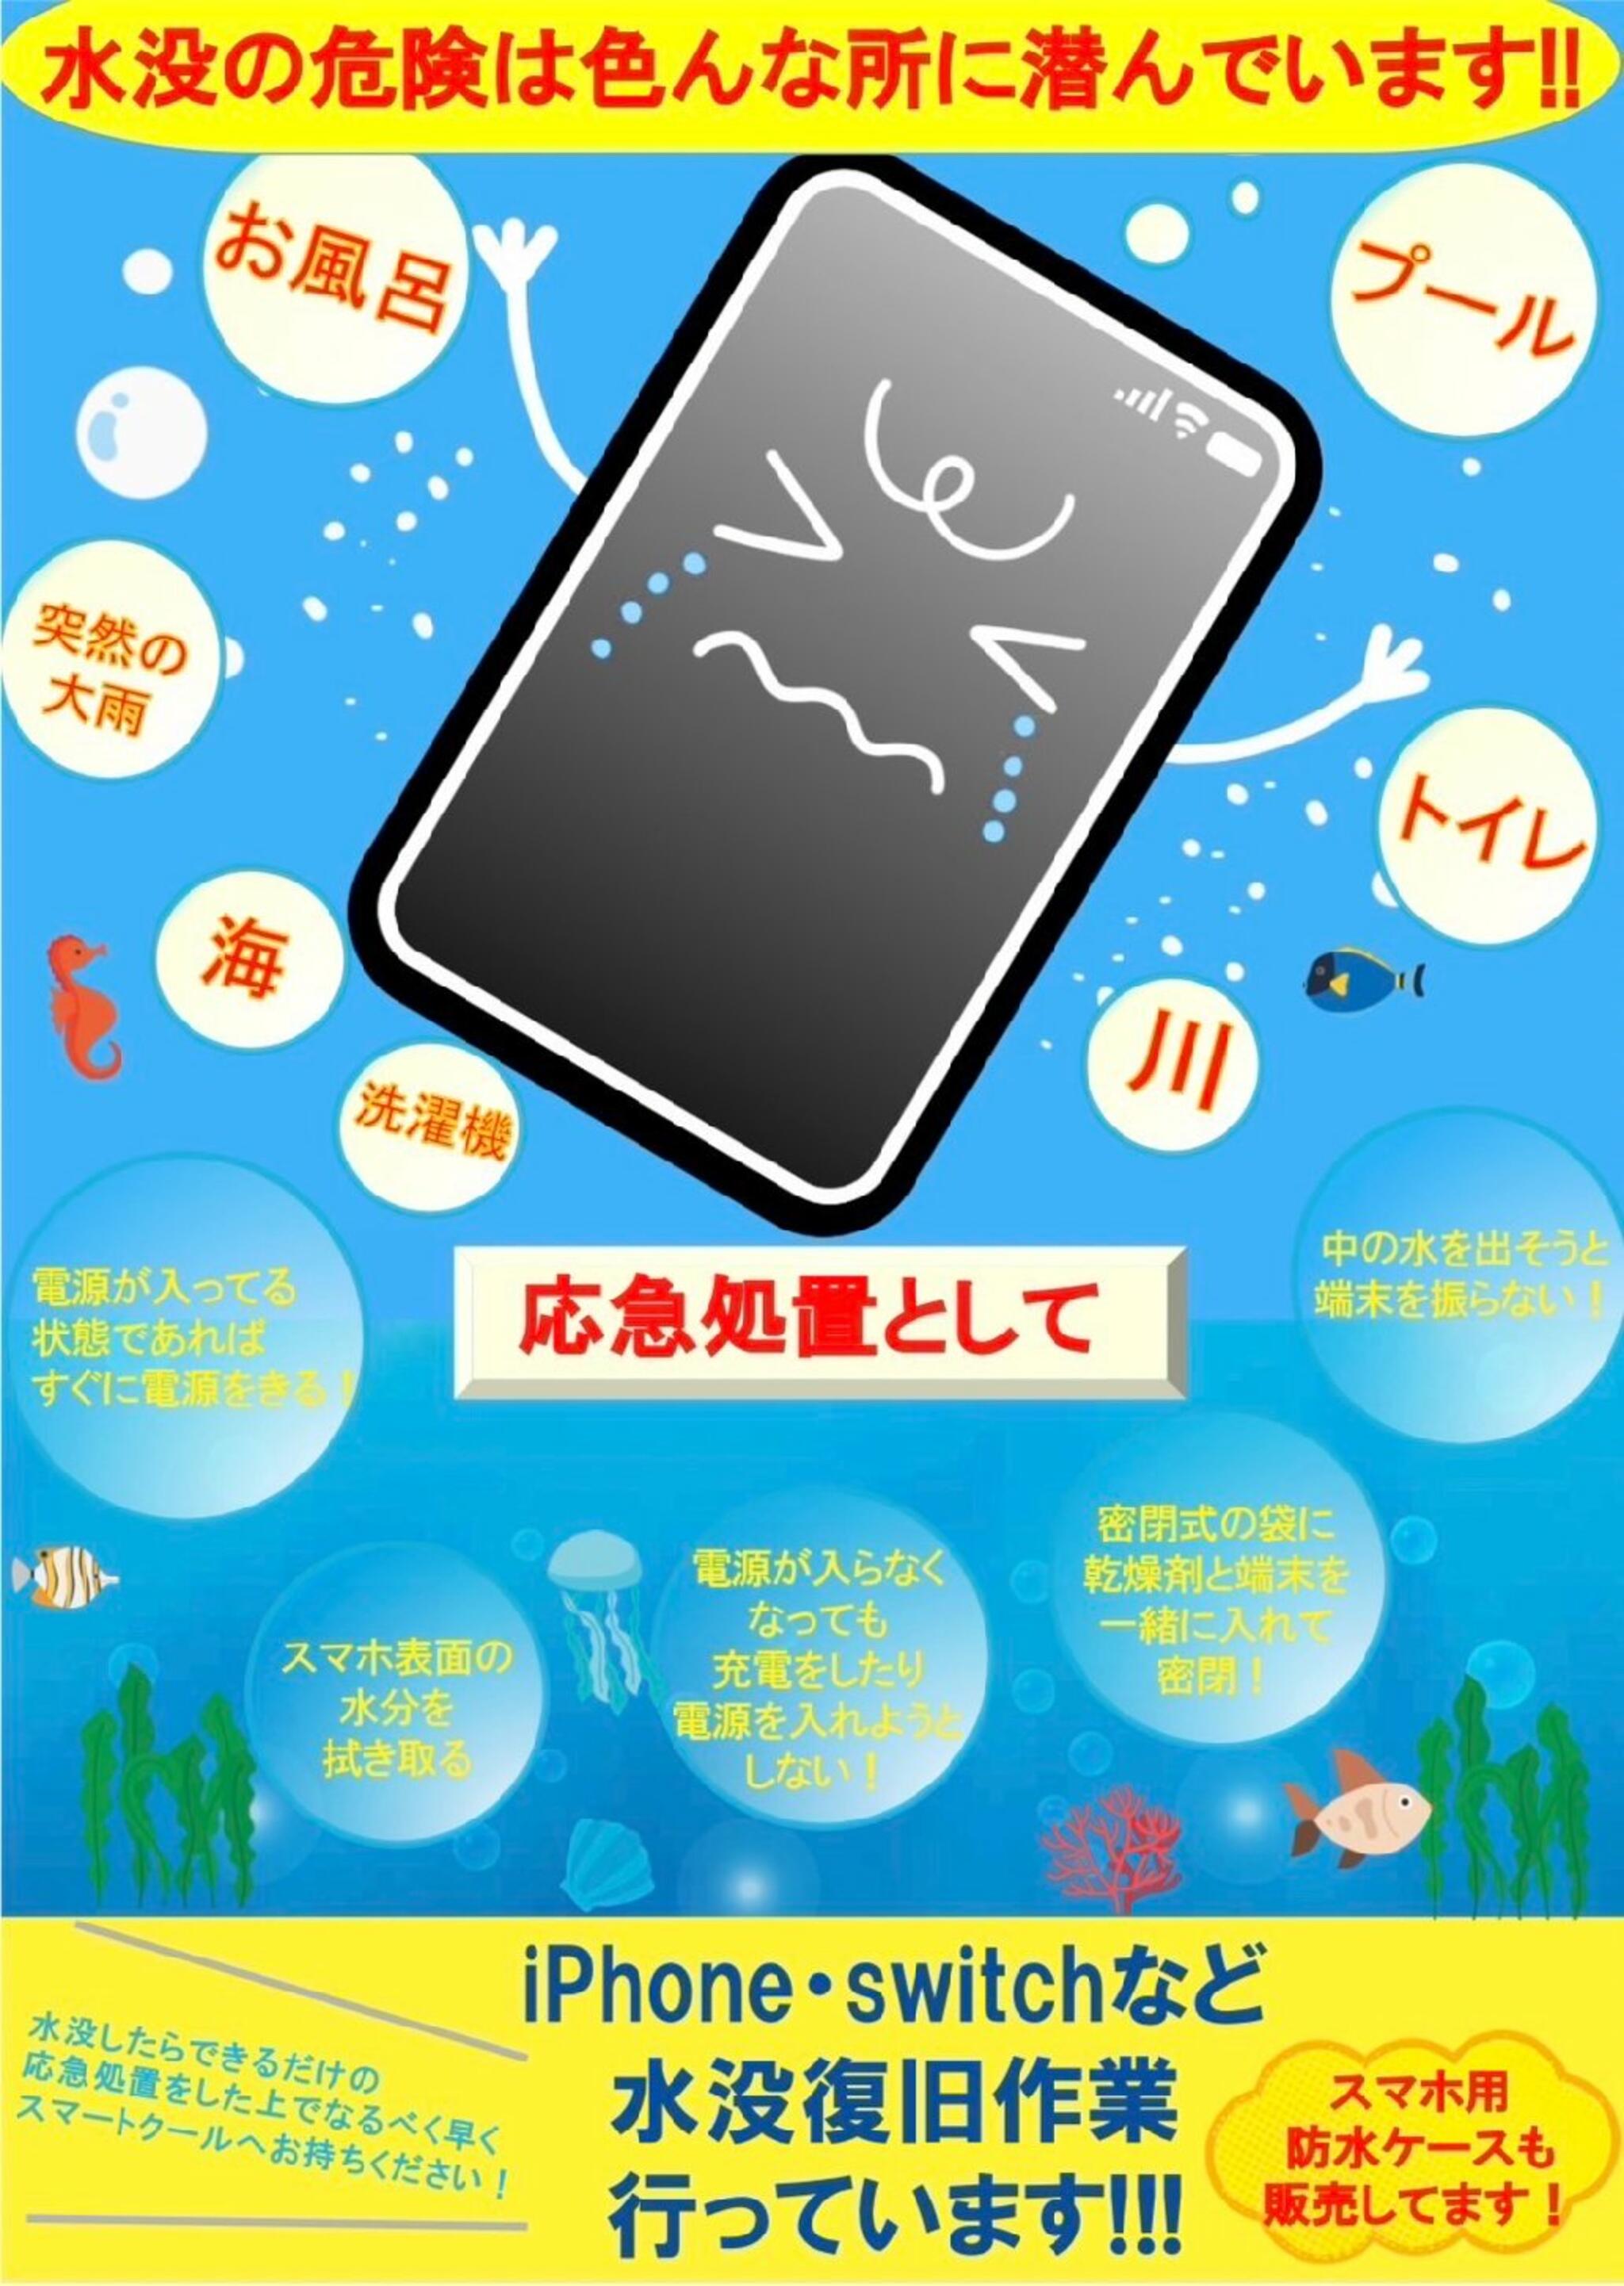 iPhone・iPad・Switch修理店 スマートクール イオンモール広島祇園店からのお知らせ(夏でのトラブルでiPhoneが・・・となってしまったら)に関する写真